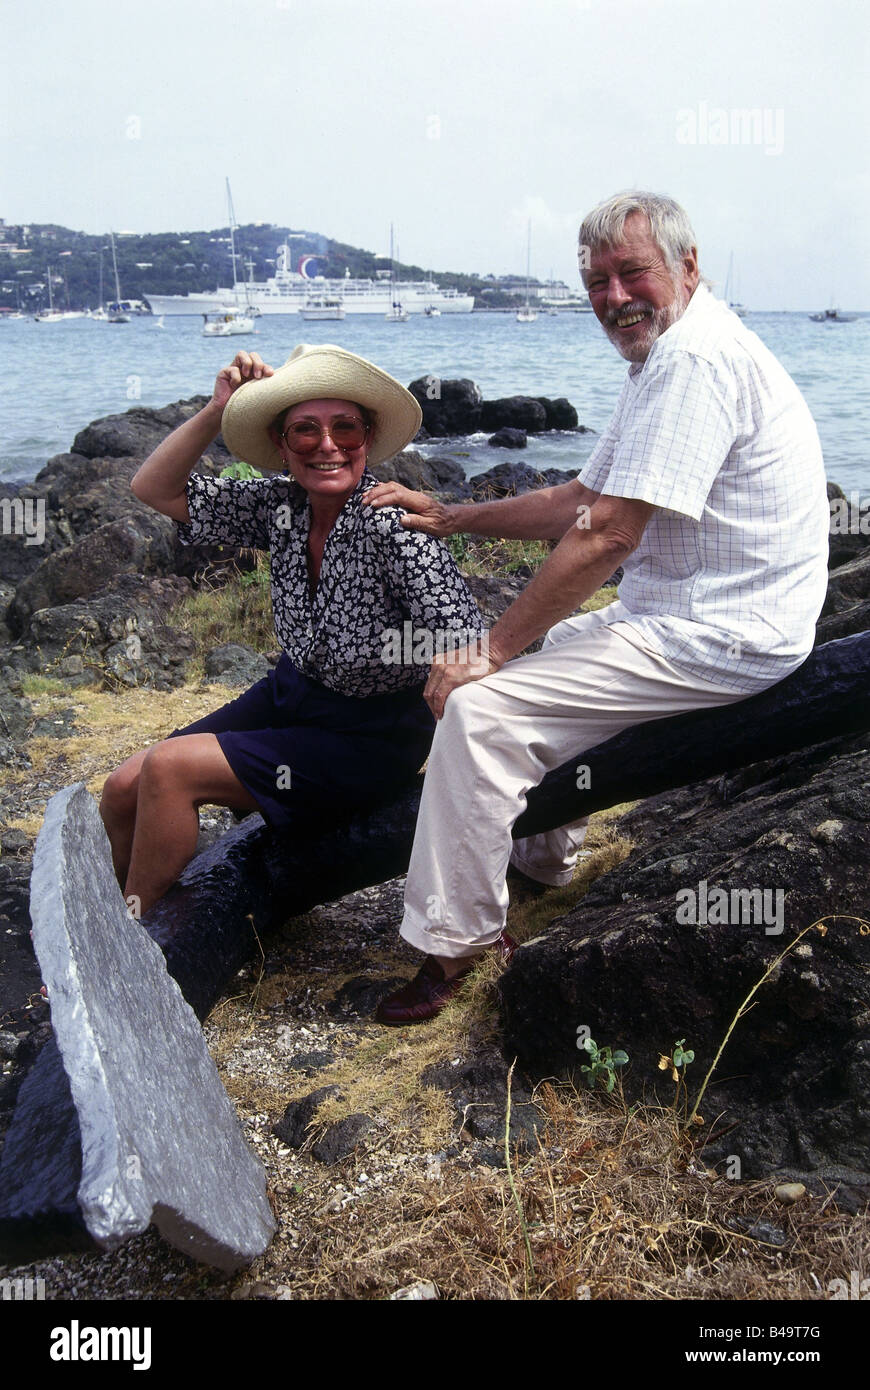 Schönherr, Dietmar, 17.5.1926 - 18.7.2014, acteur autrichien, pleine longueur, avec sa femme Vivi Bach, sur la côte, assise sur ancre, Charlotte Amalie, Iles Vierges, années 1980, Banque D'Images